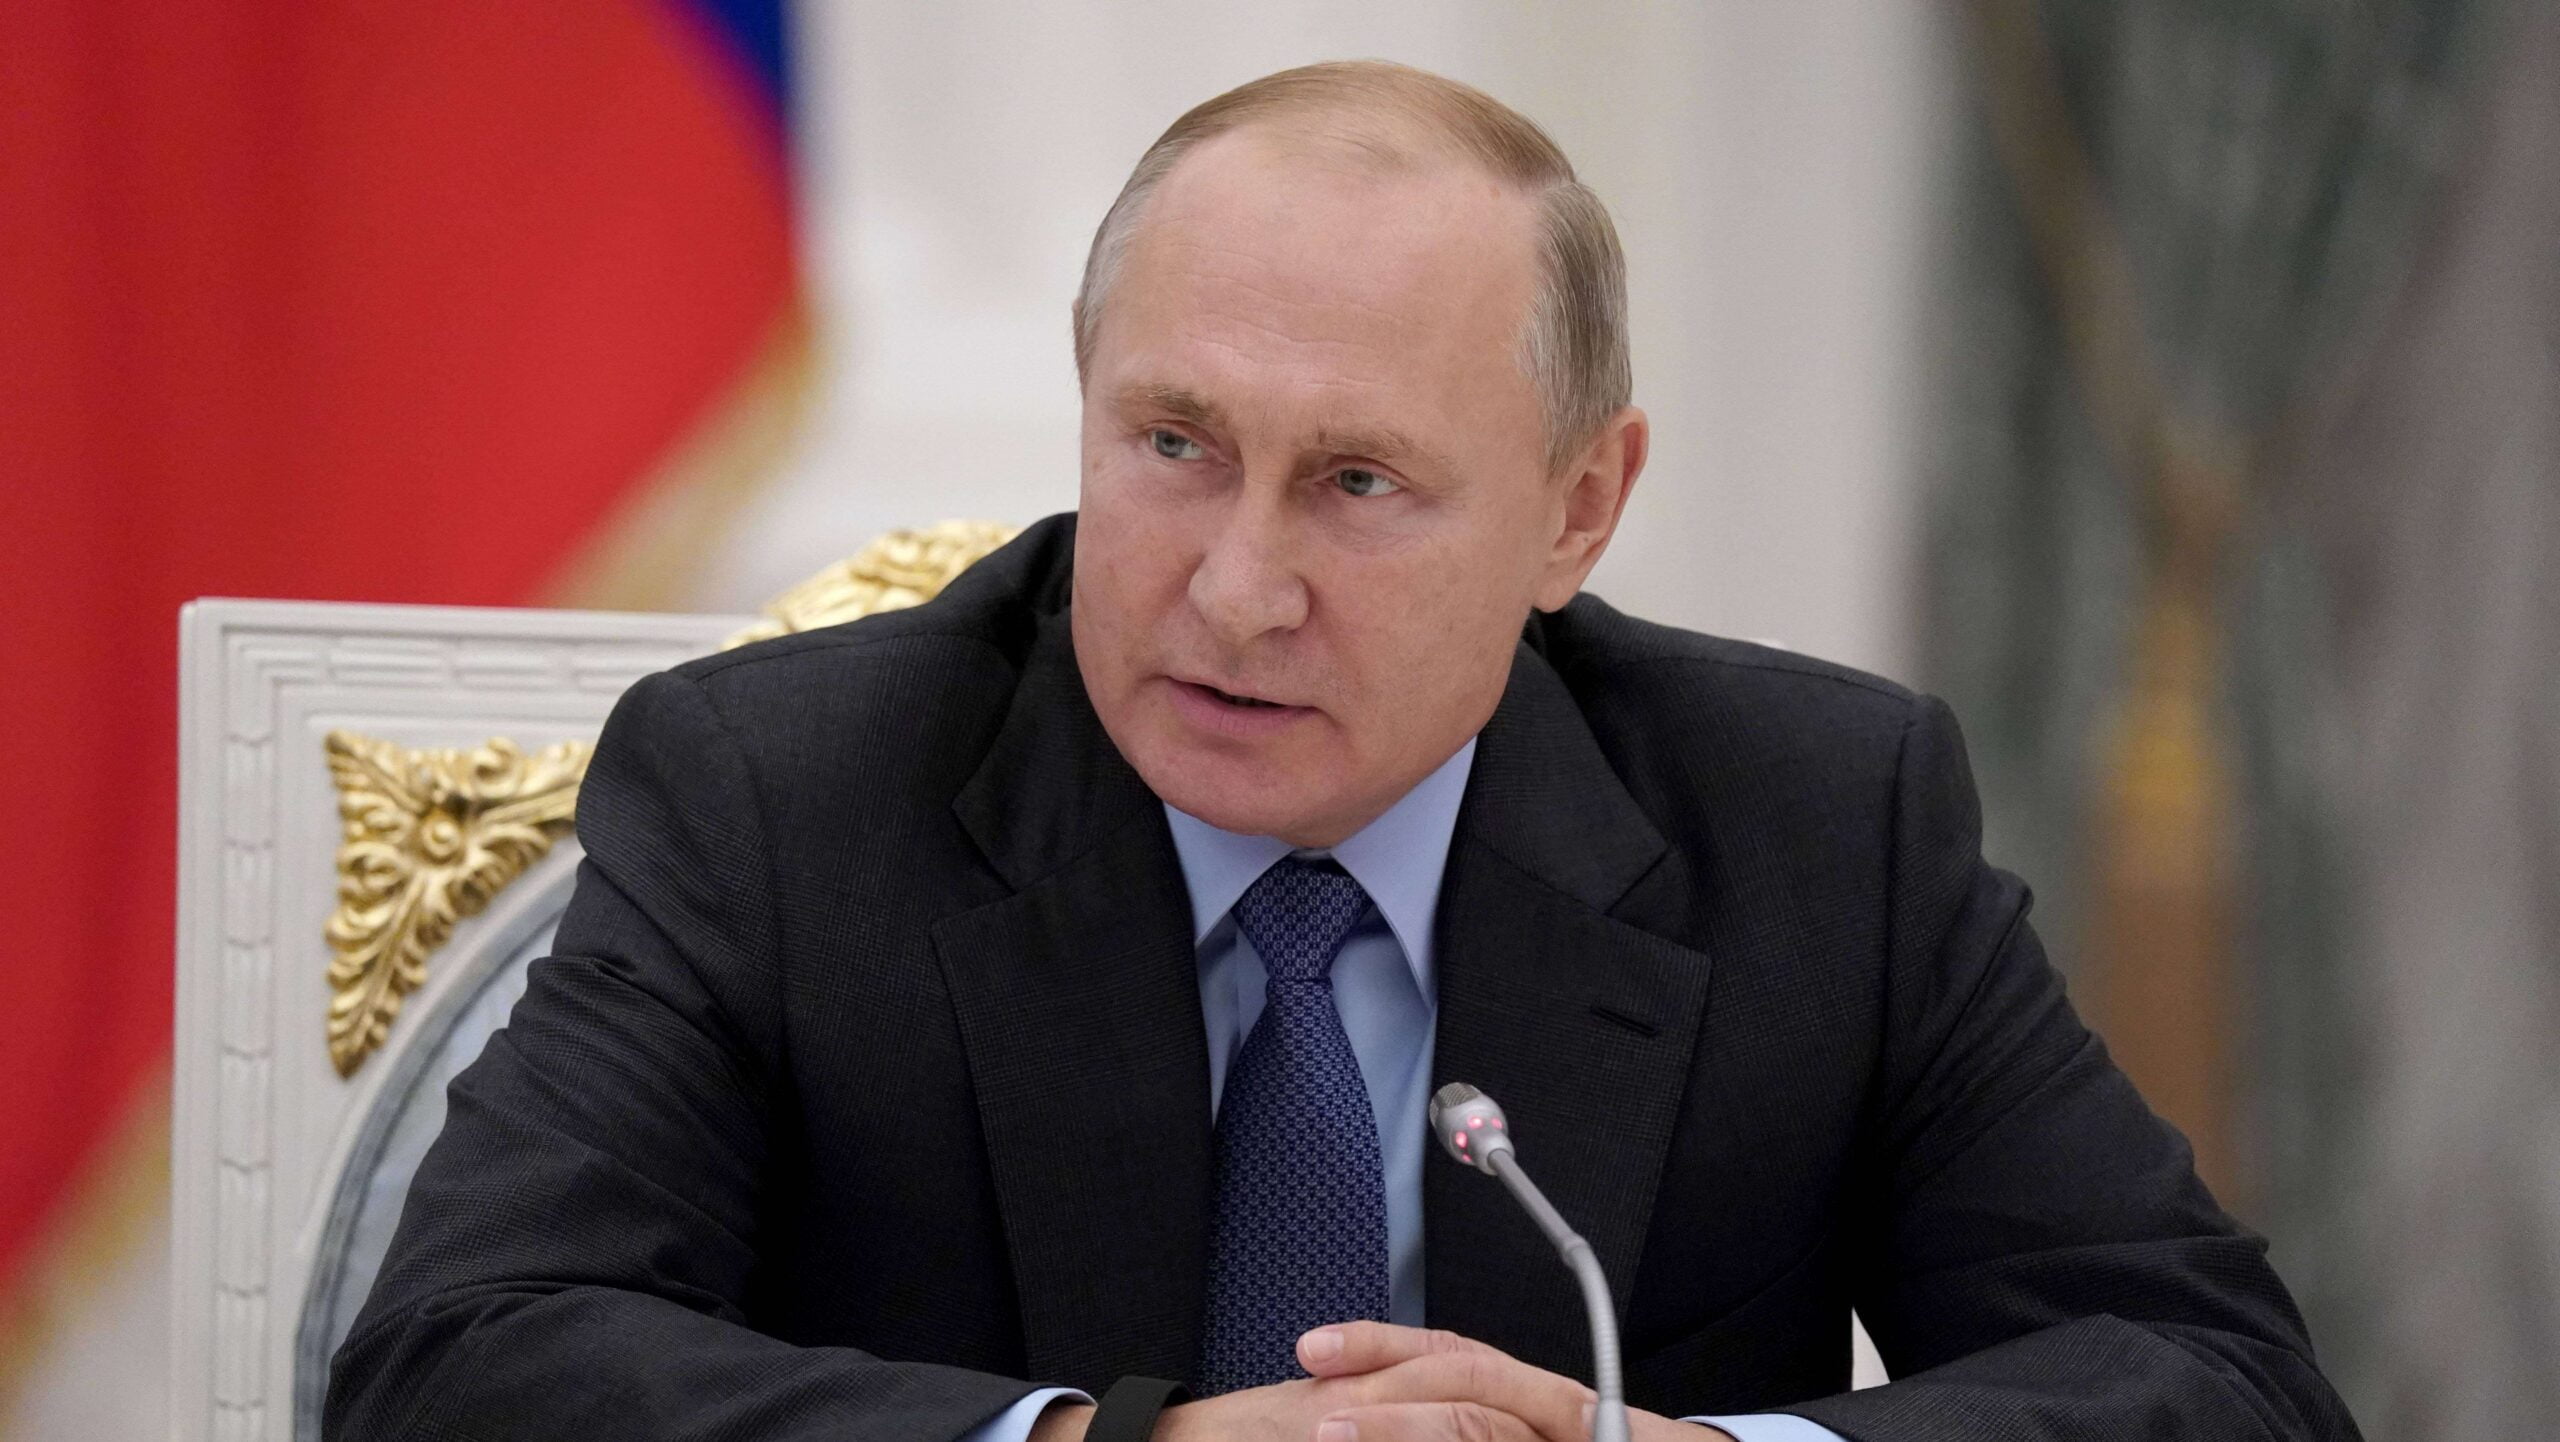 Путин: боеприпасы с обедненным ураном представляют опасность из-за радиационной пыли